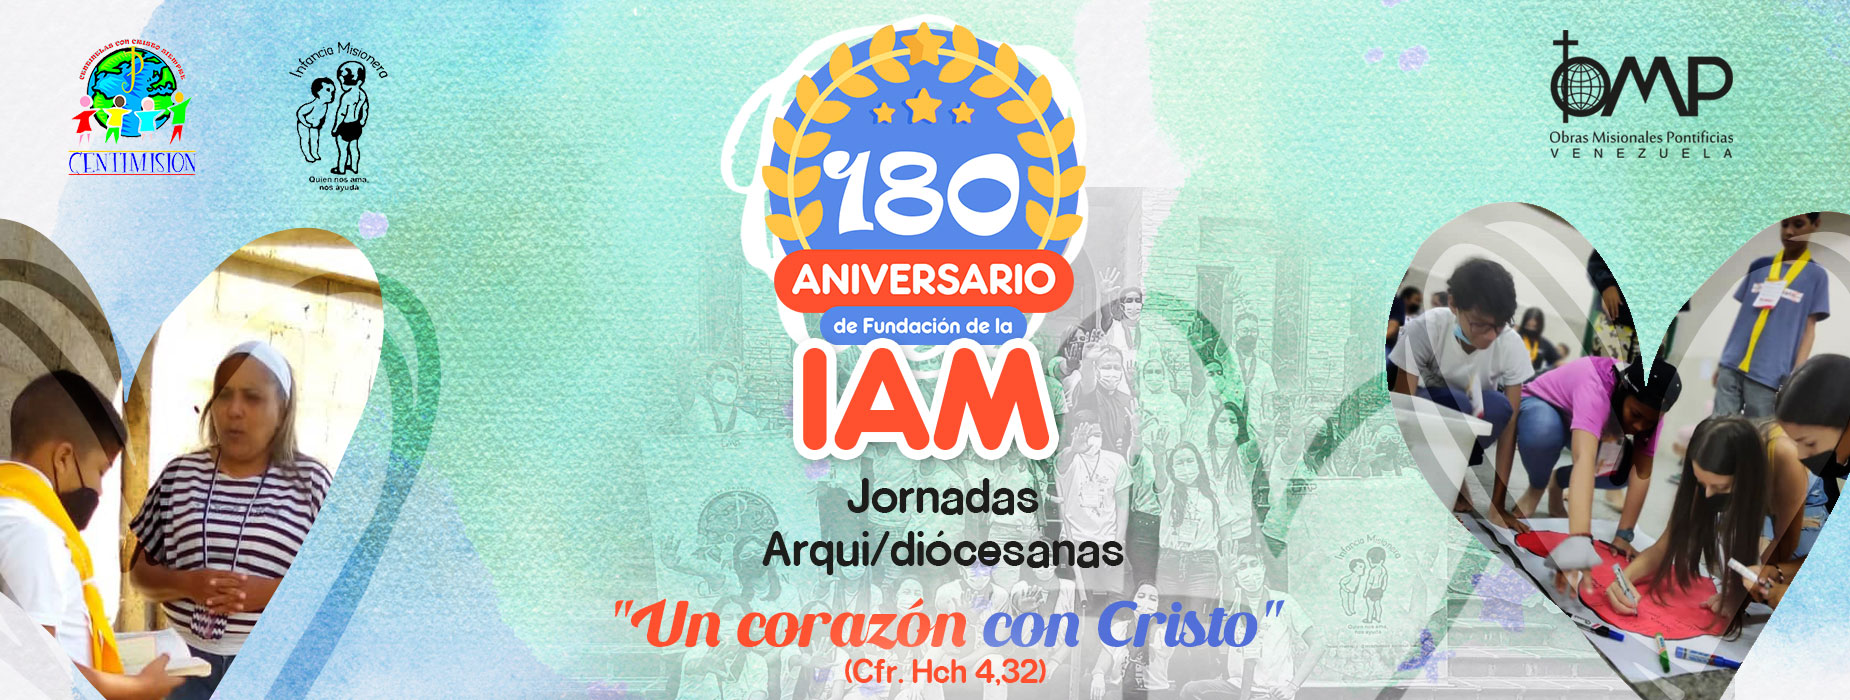 Aniversario 180 años IAM